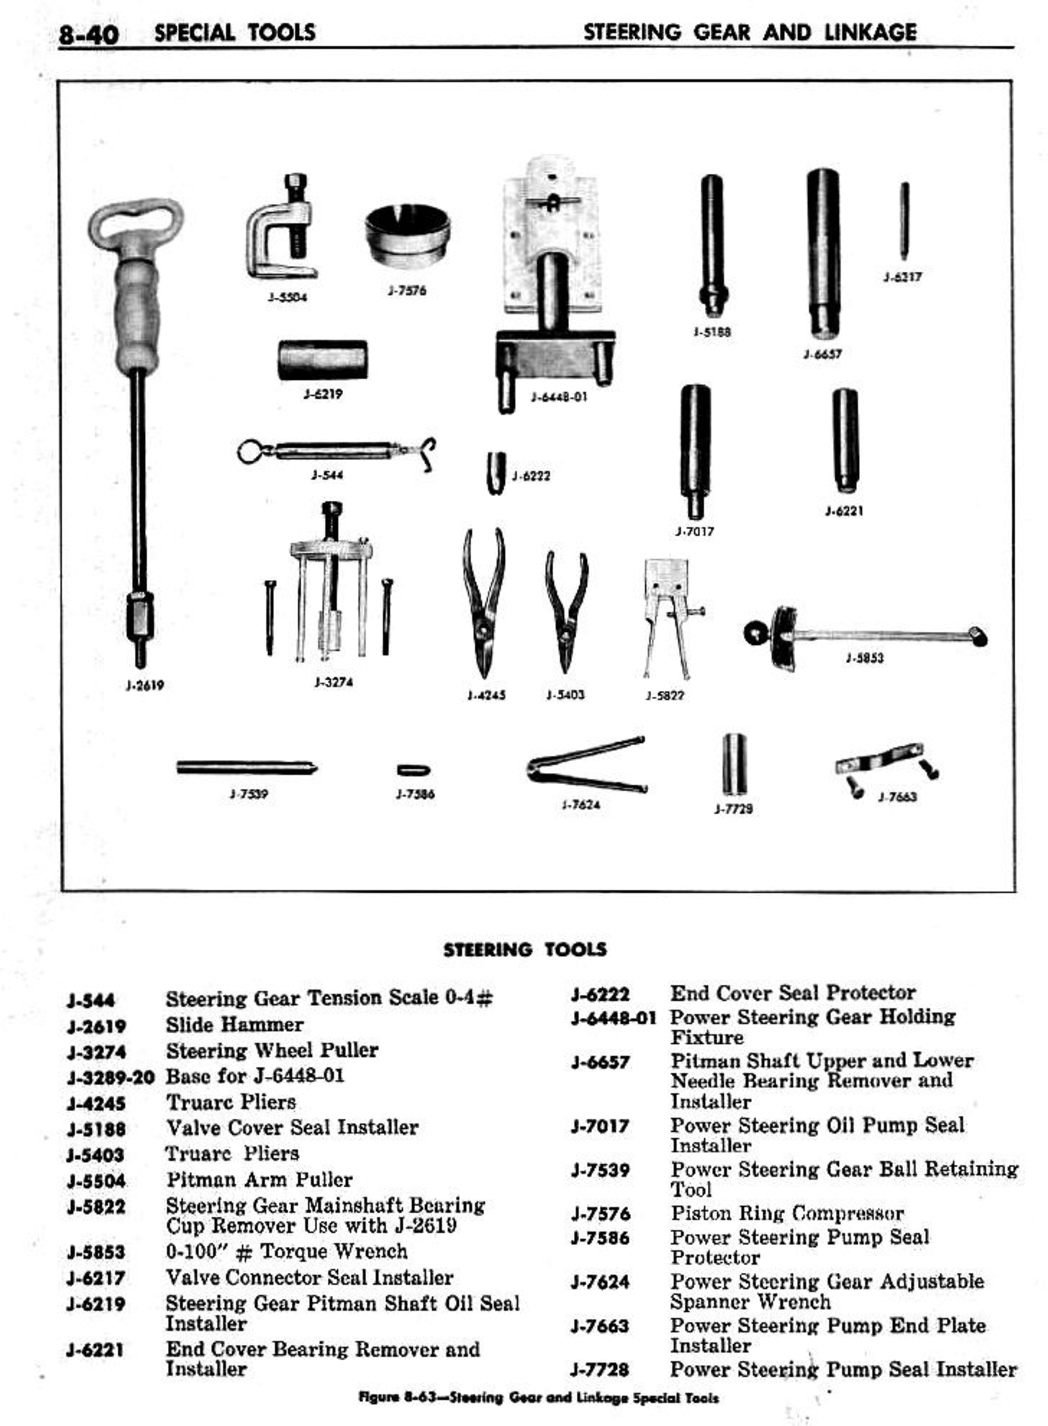 n_09 1959 Buick Shop Manual - Steering-040-040.jpg